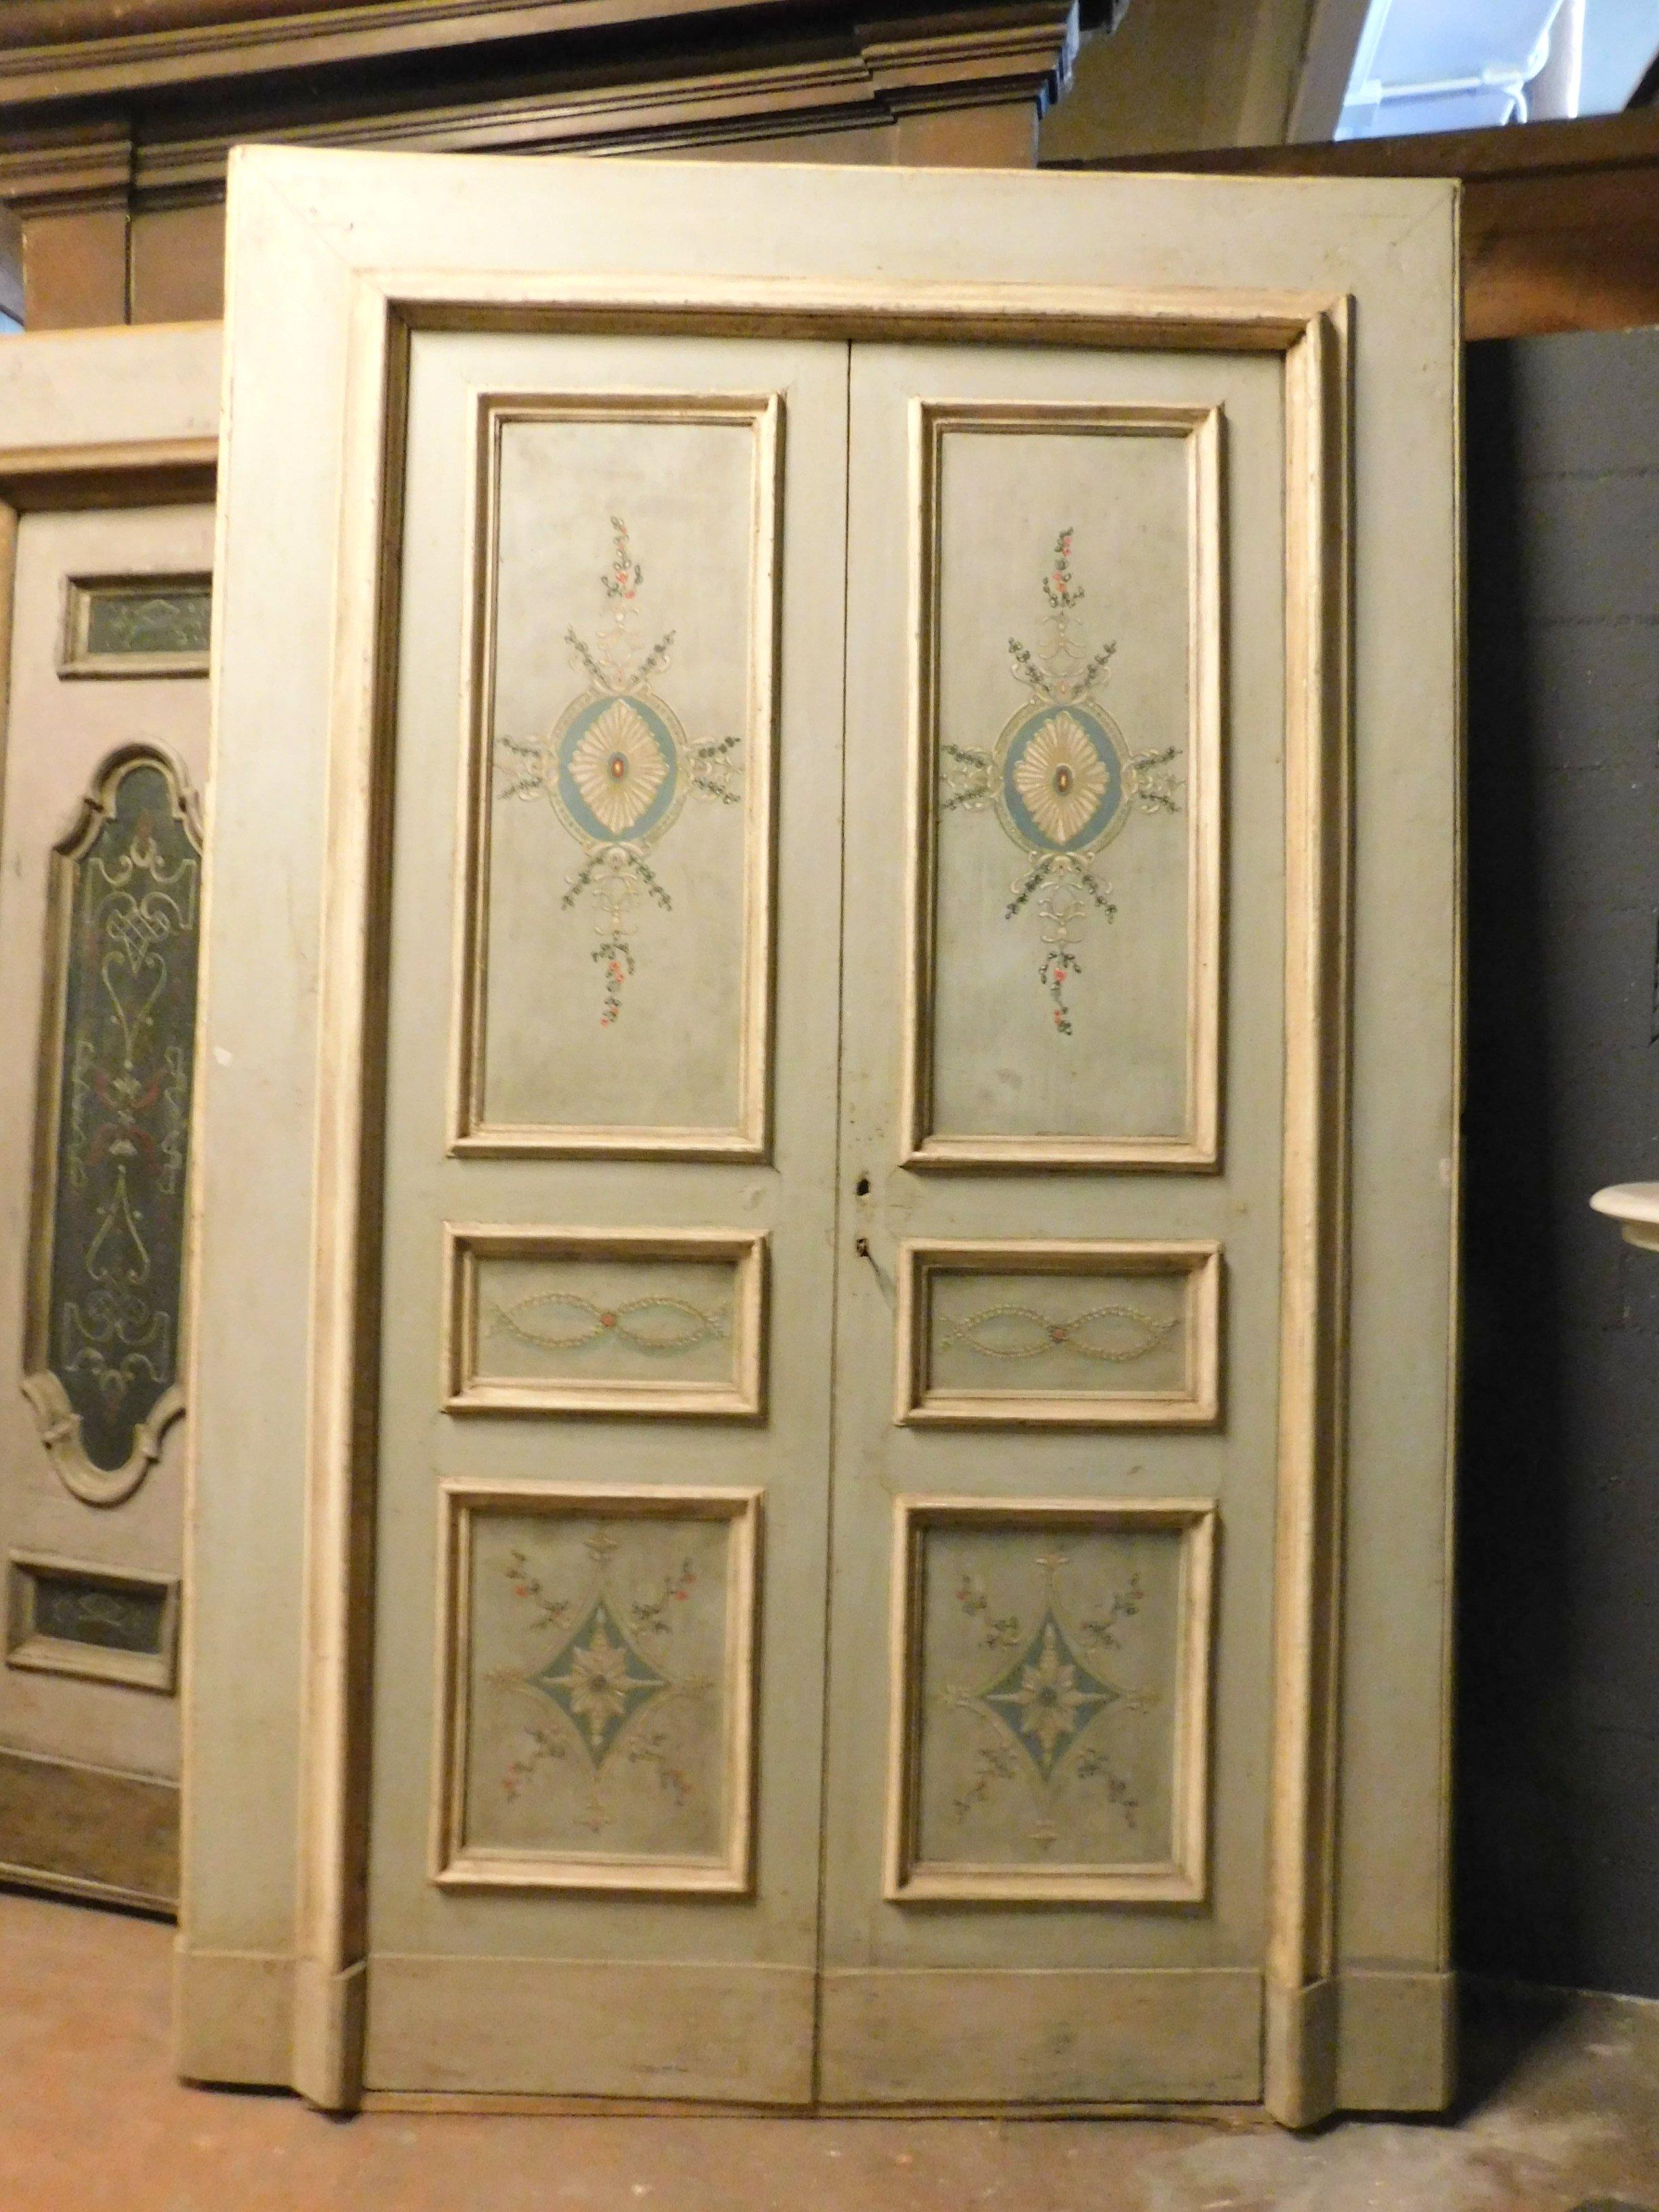 Antike lackierte und bemalte Tür mit zeitgenössischen Blumen, originaler Rahmen mit dicker und lackierter Molura, dominante blaue Farbe, schön auch auf der Rückseite, öffnet sich zu schieben, zweiflügelig, bereits konservativ restauriert (nur Griffe